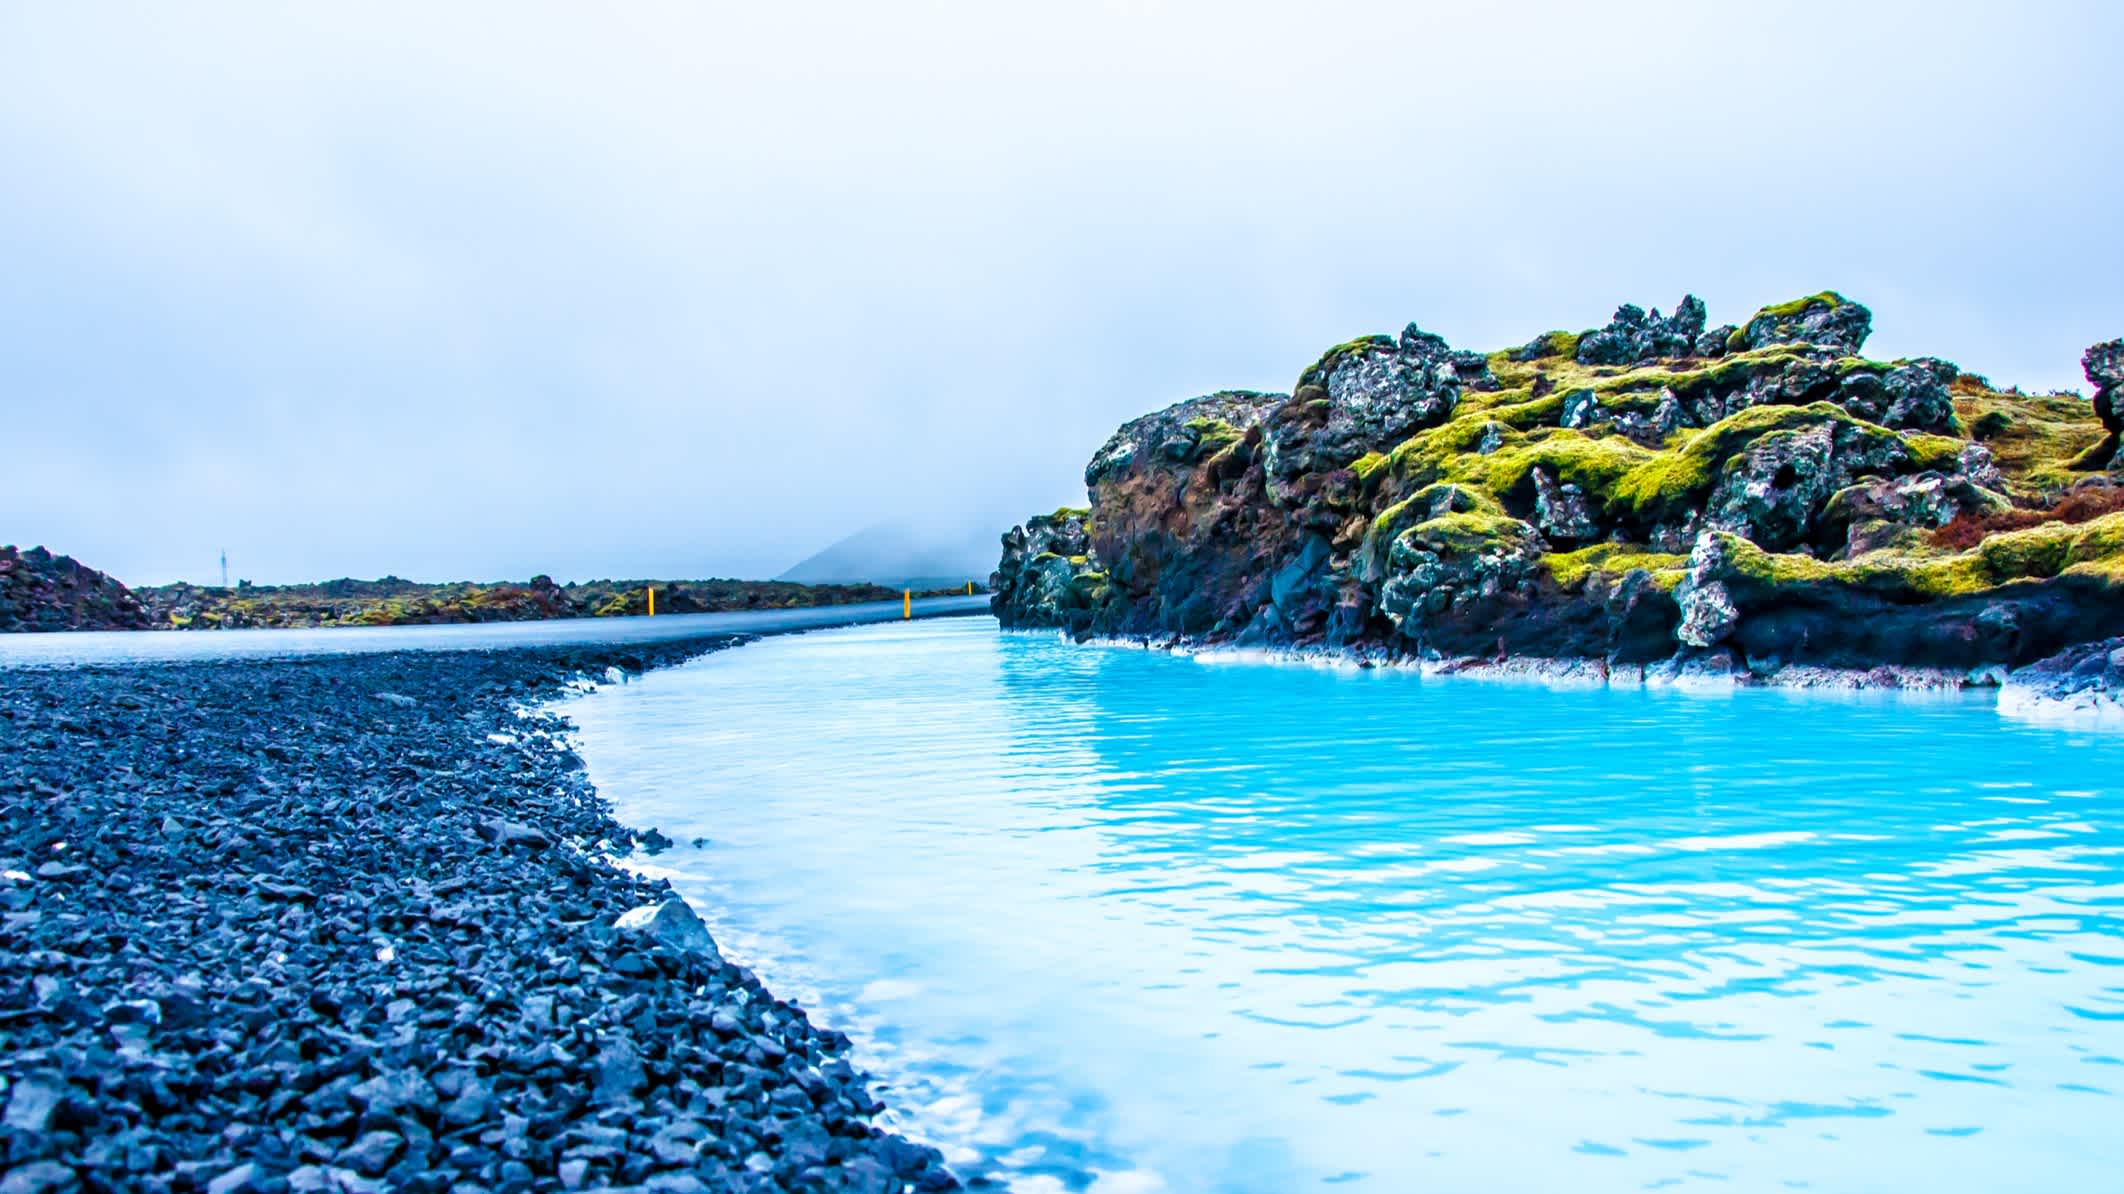 Le Blue Lagoon en Islande avec sa plage de galets noirs et ses pierres couvertes de mousse